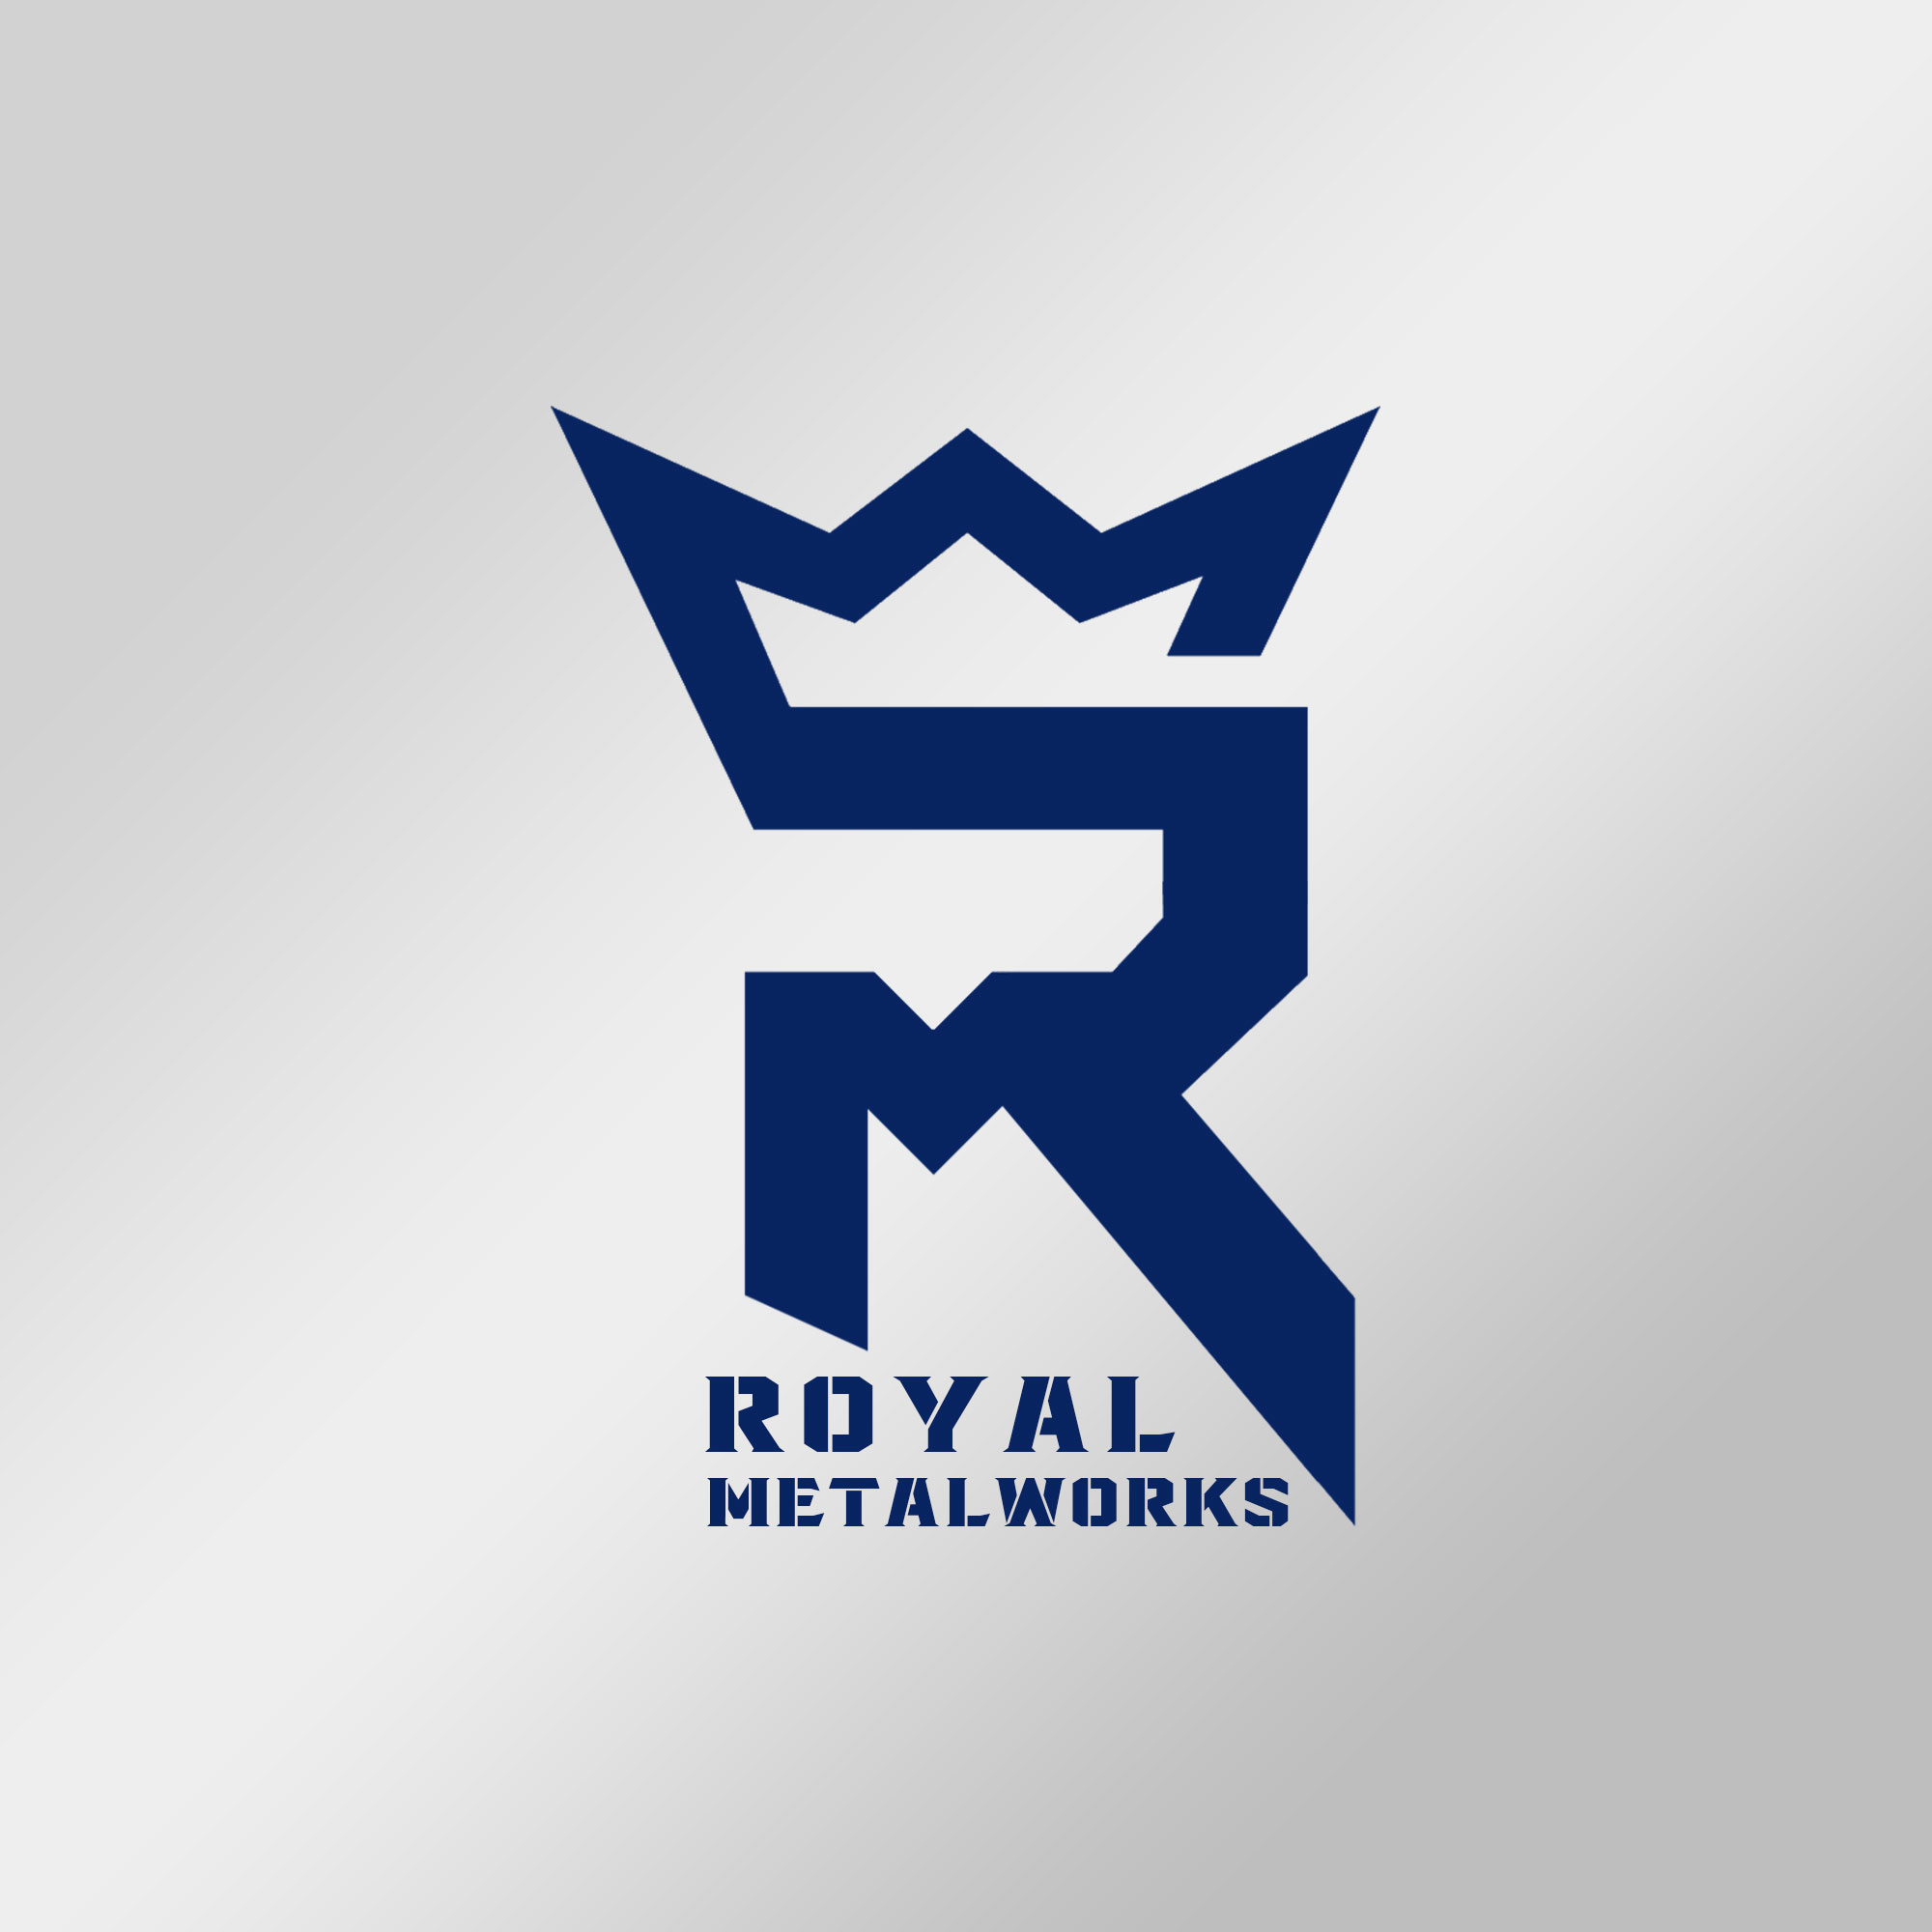 royal metalworks logo